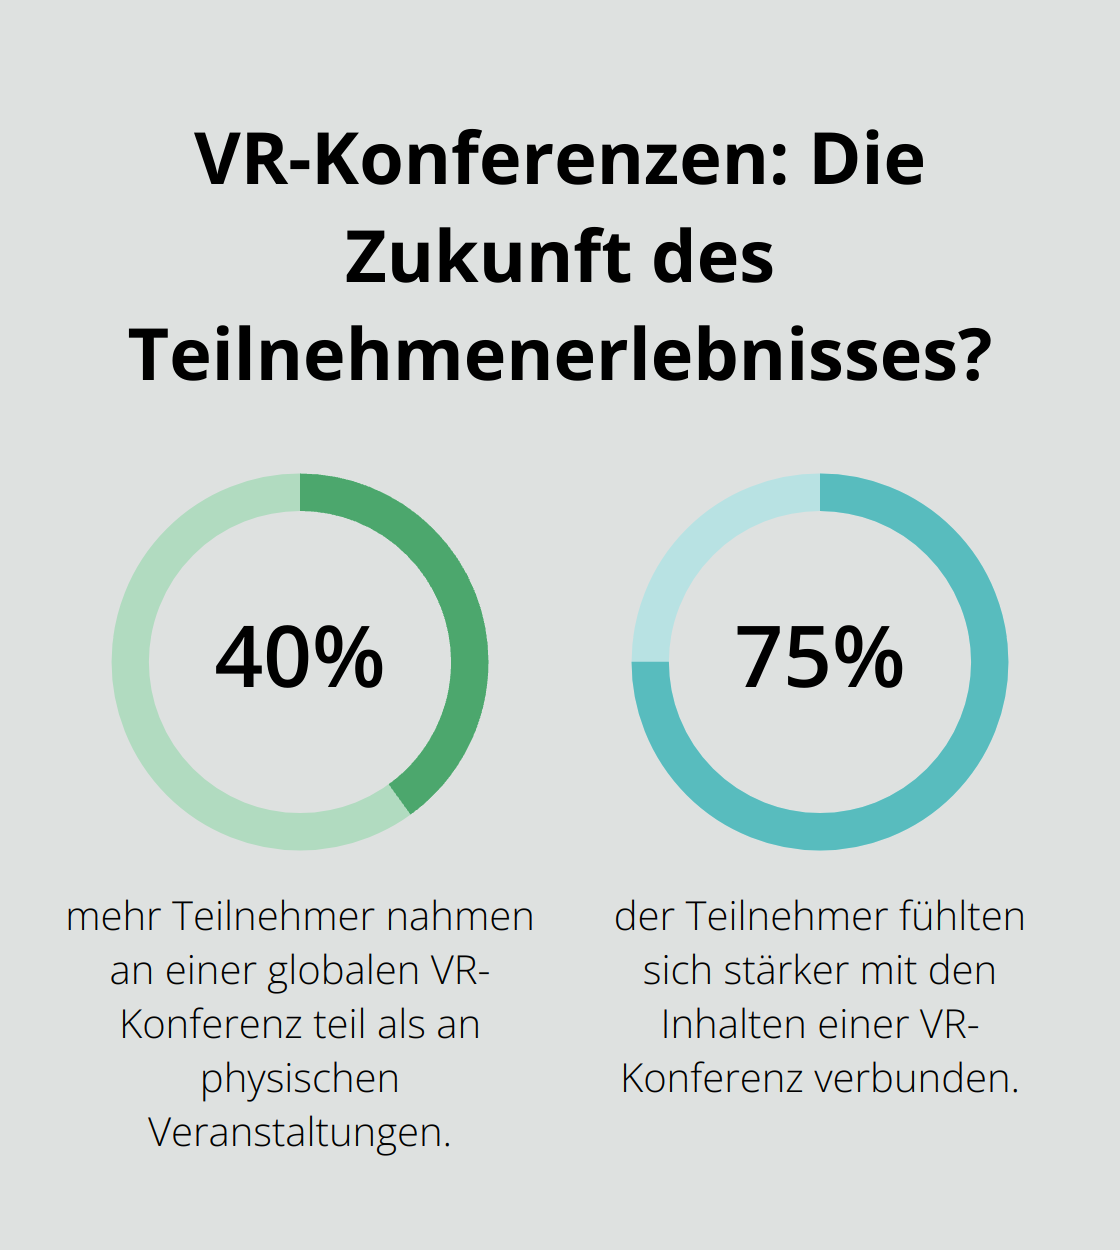 Fact - VR-Konferenzen: Die Zukunft des Teilnehmenerlebnisses?